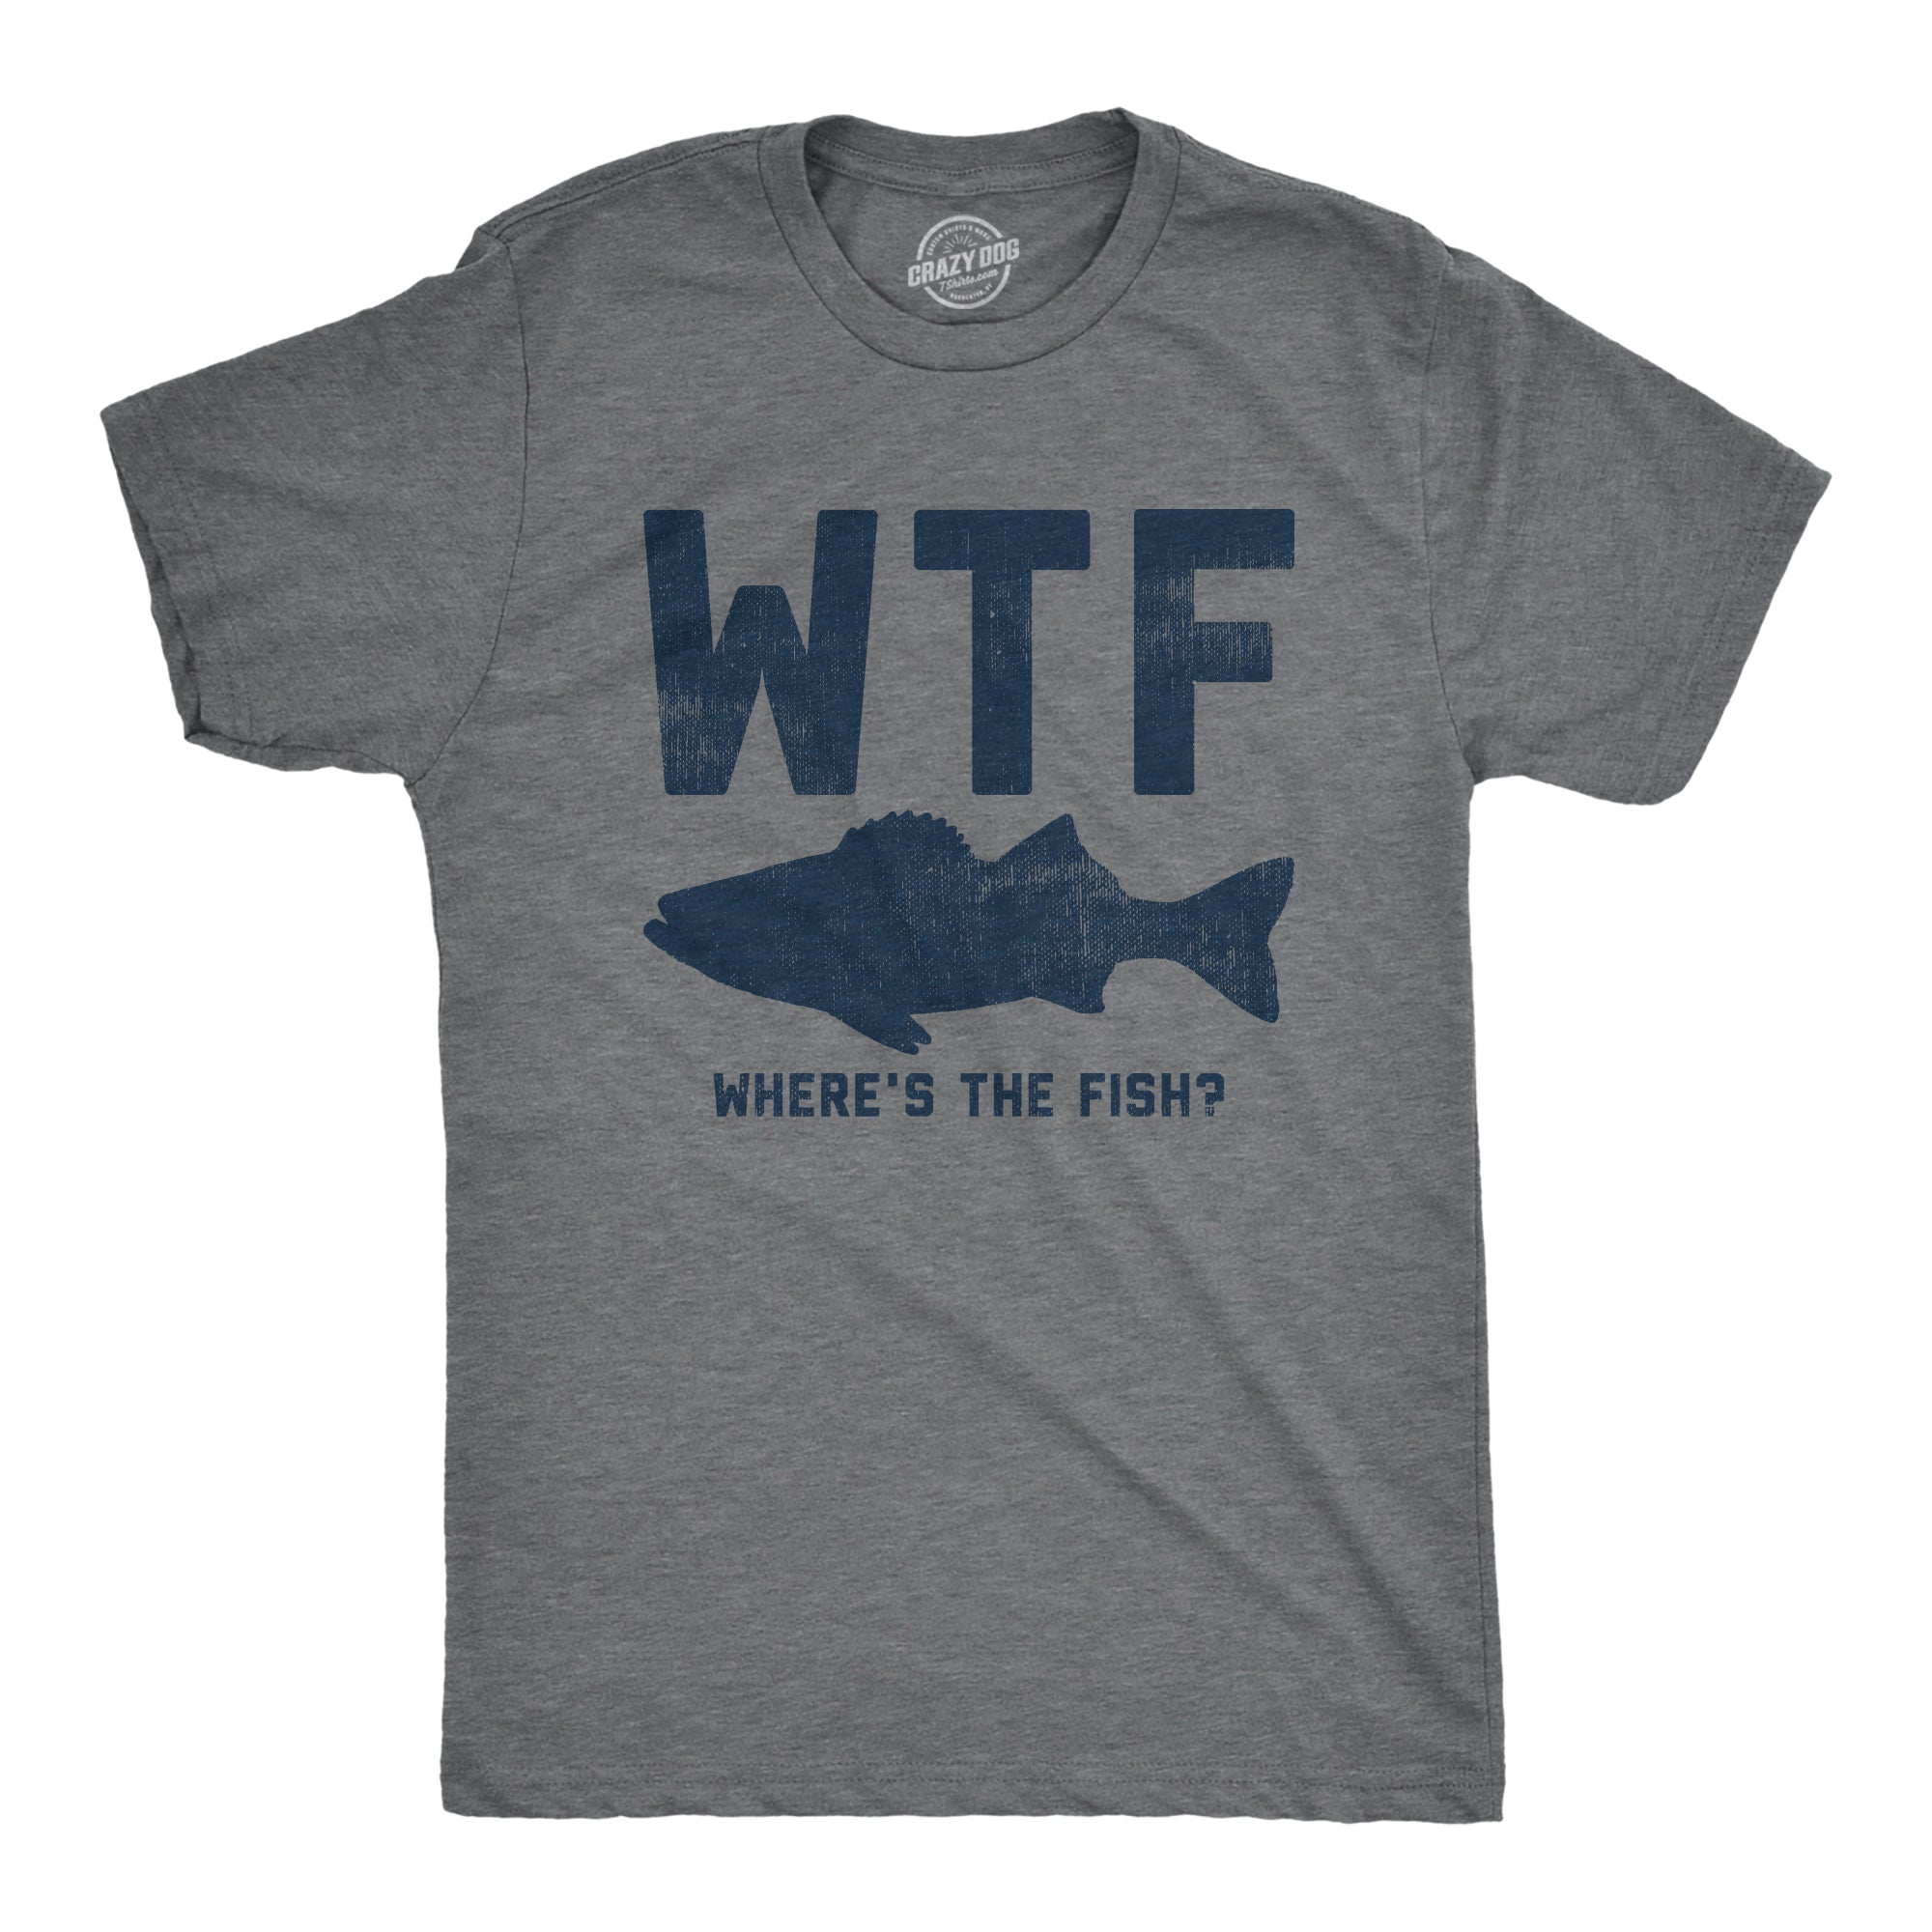  Funny Fishing Shirts